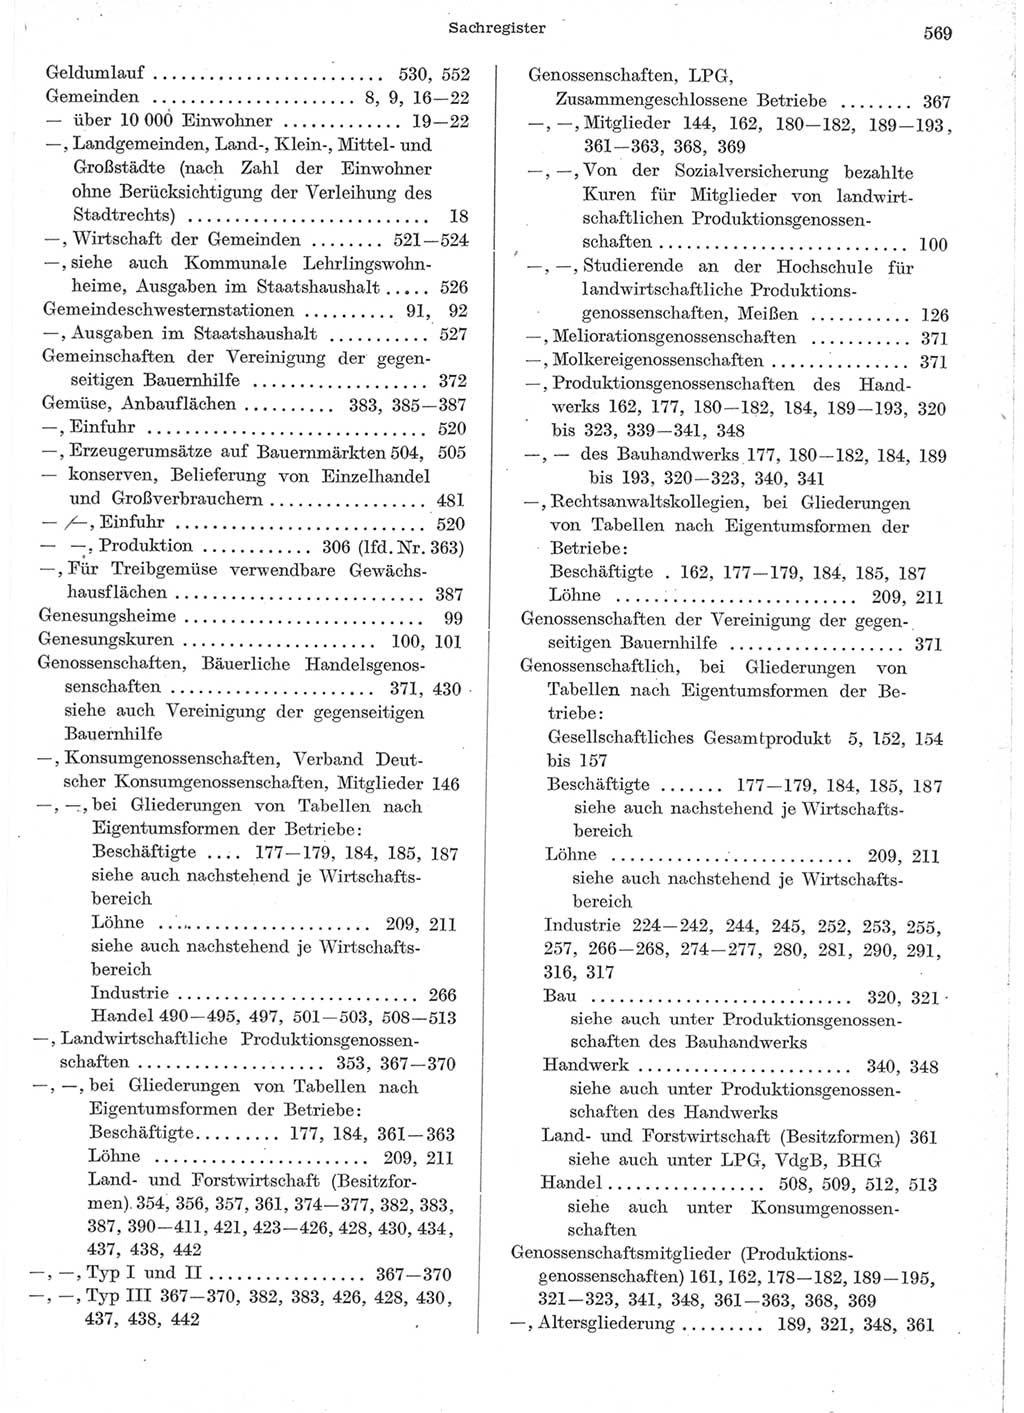 Statistisches Jahrbuch der Deutschen Demokratischen Republik (DDR) 1957, Seite 569 (Stat. Jb. DDR 1957, S. 569)